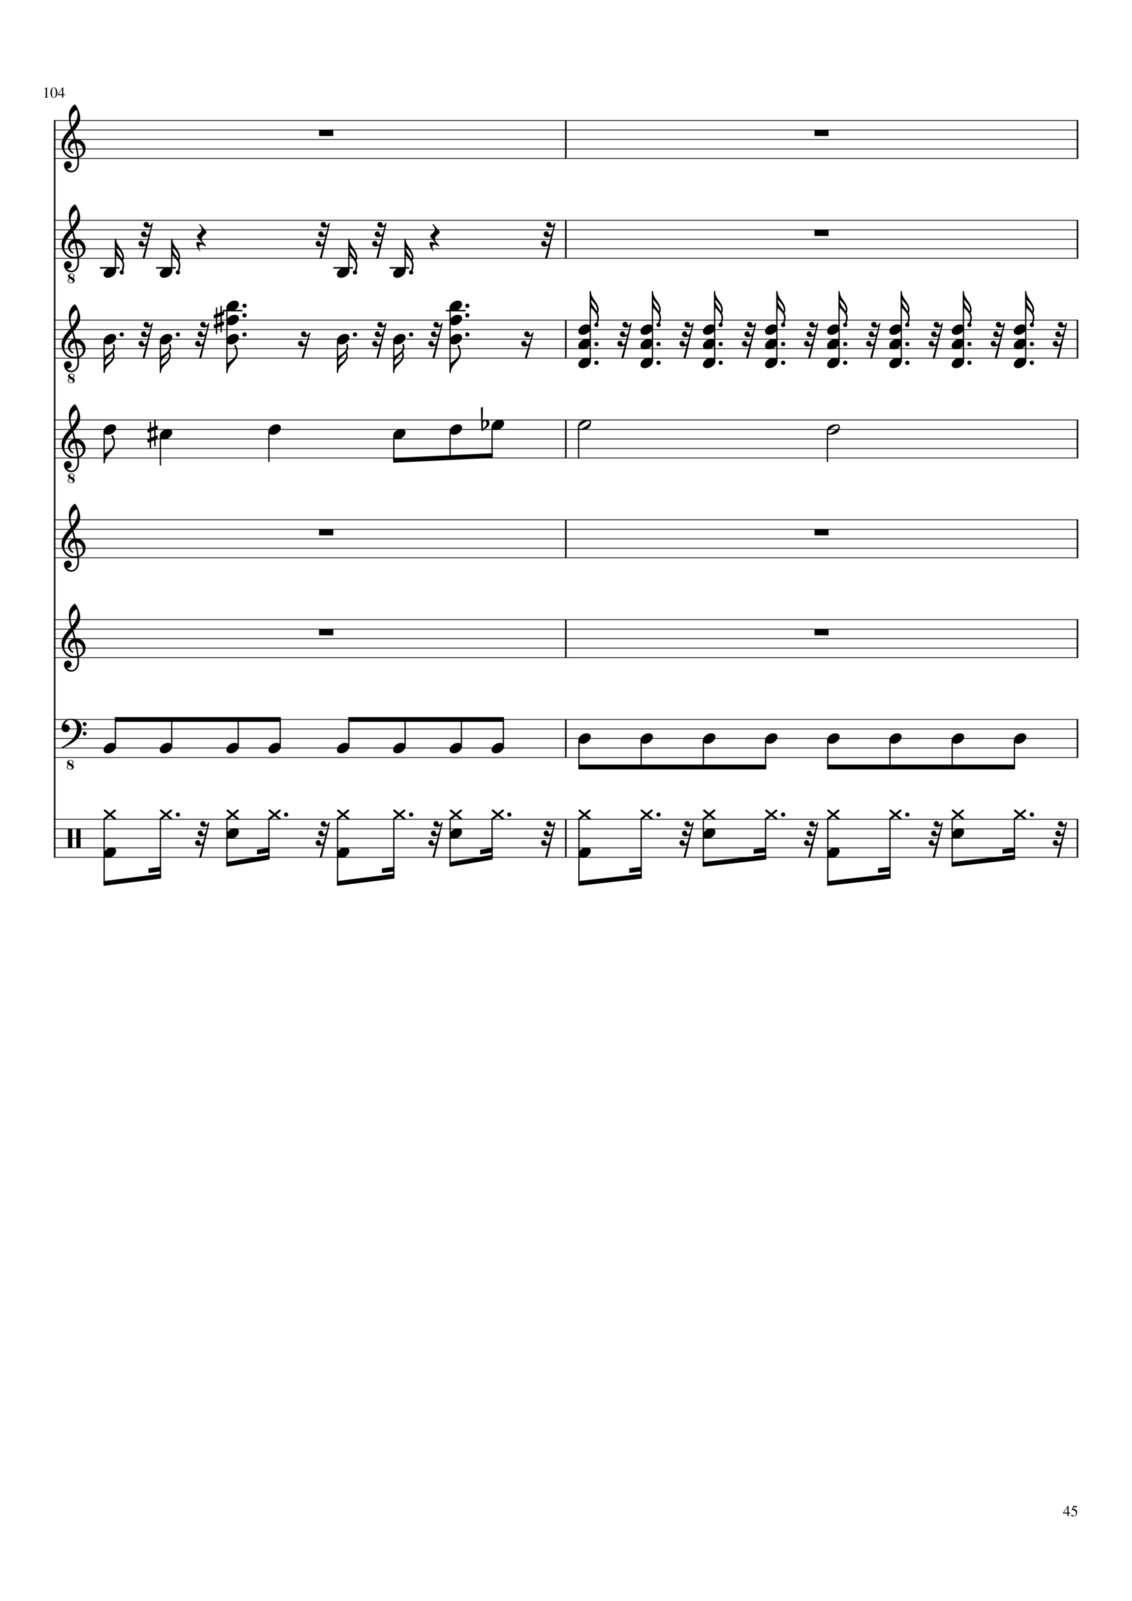 Zvezdnyiy vodoem slide, Image 3